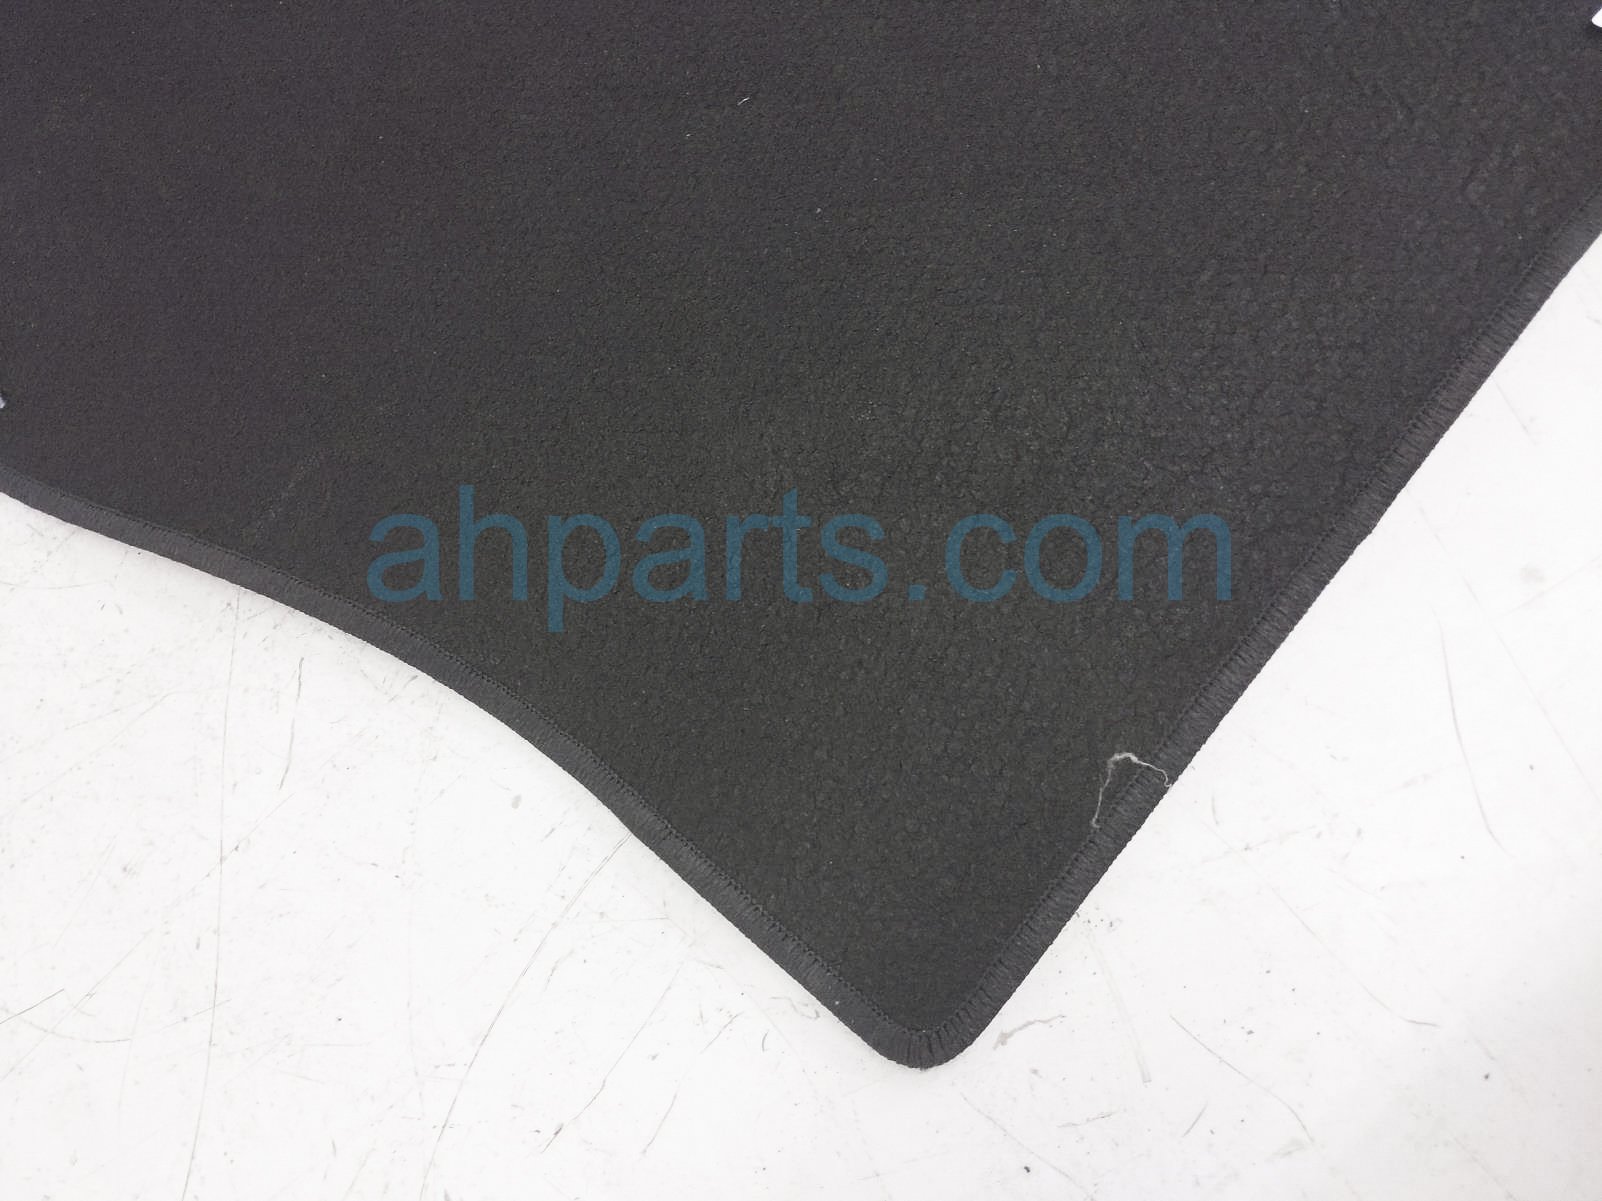 Sold 2021 Toyota Venza Cargo Carpet Floor Mat - Black PT956-48215-02,